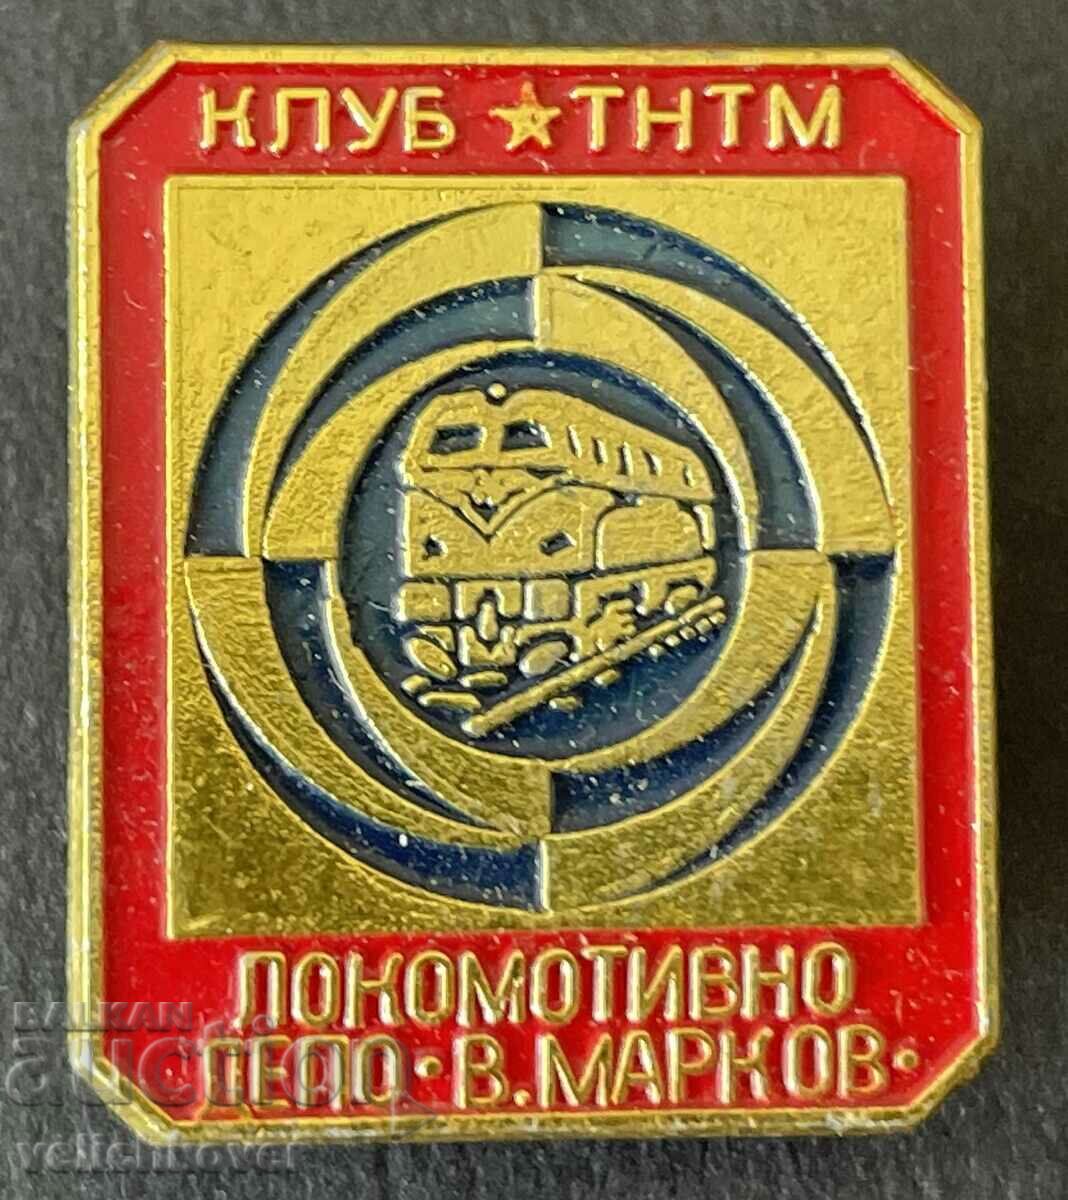 36944 Βουλγαρία υπογραφή BDZ club TNTM Locomotive Depot In Markov